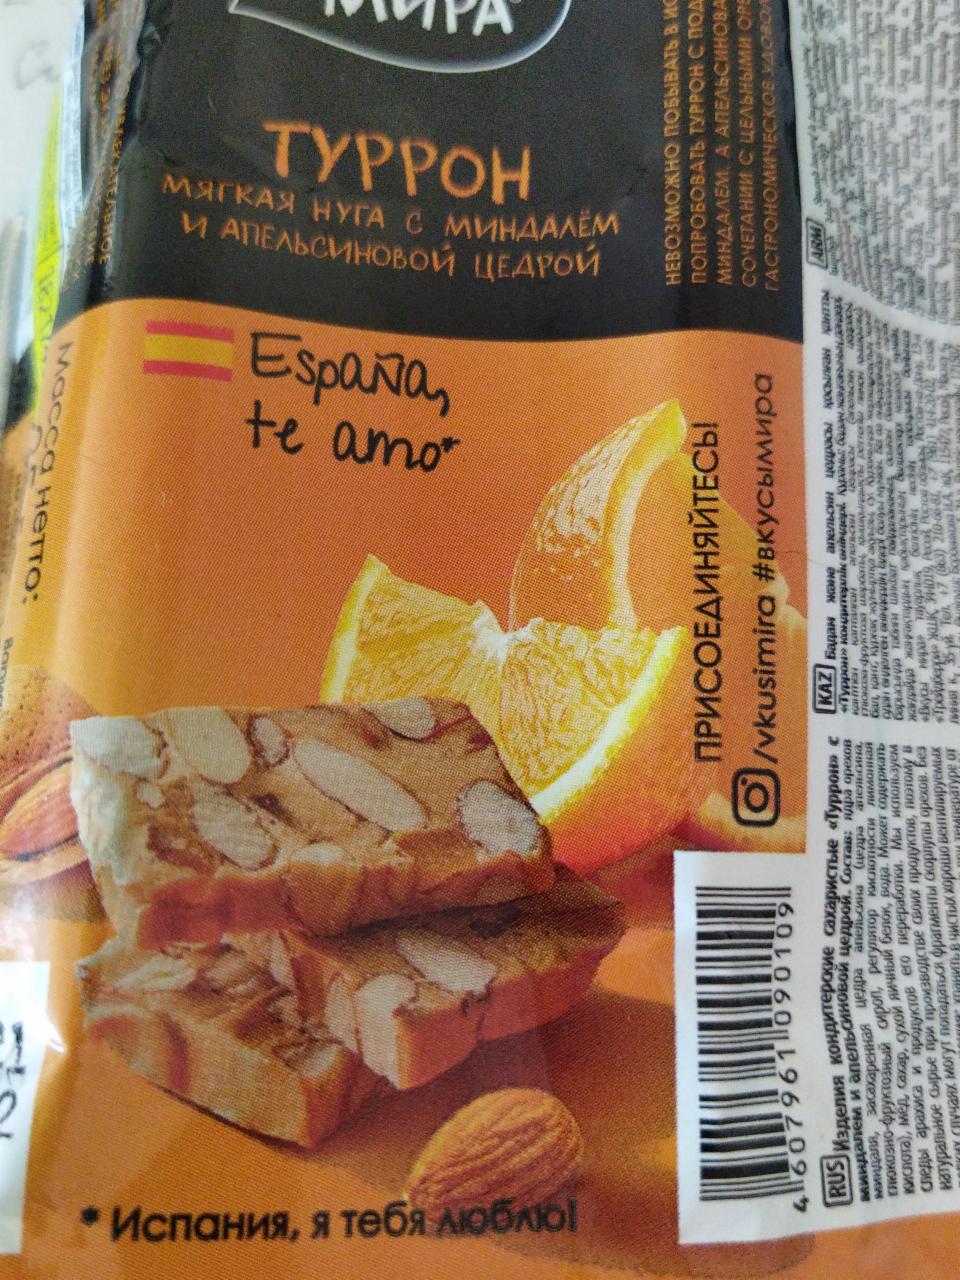 Фото - туррон Испания с апельсиновый цедрой Вкусы мира